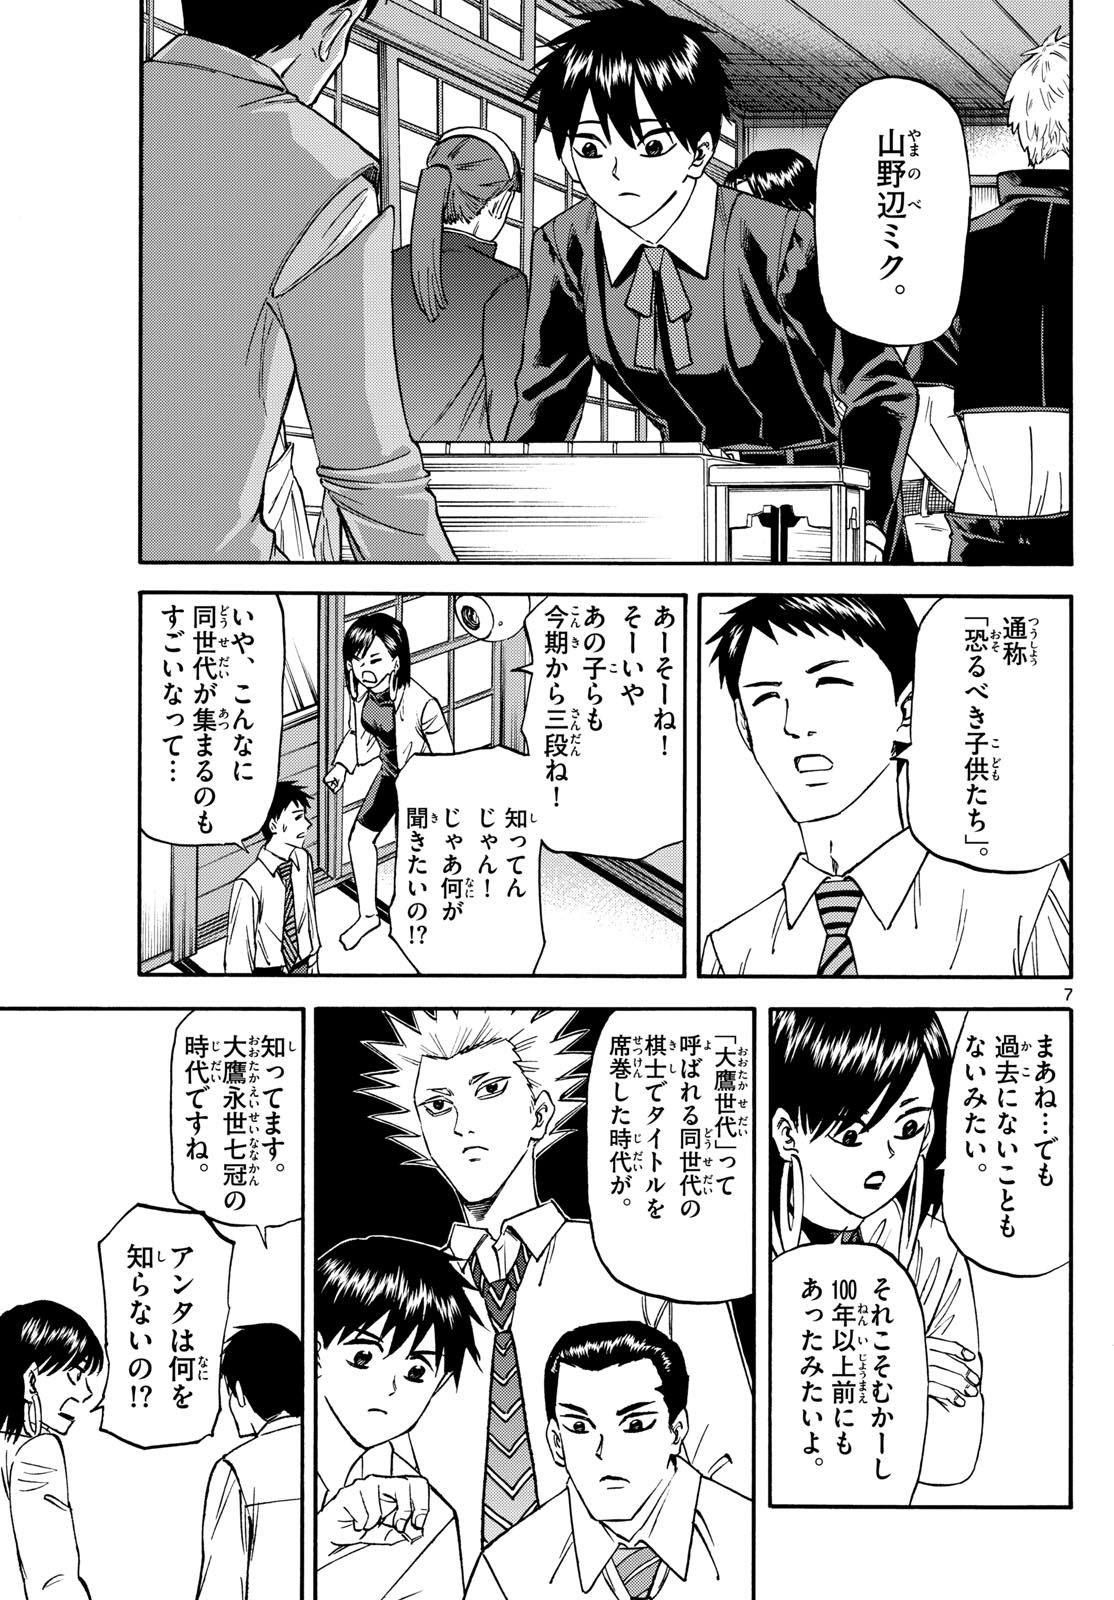 Tatsu to Ichigo - Chapter 185 - Page 7